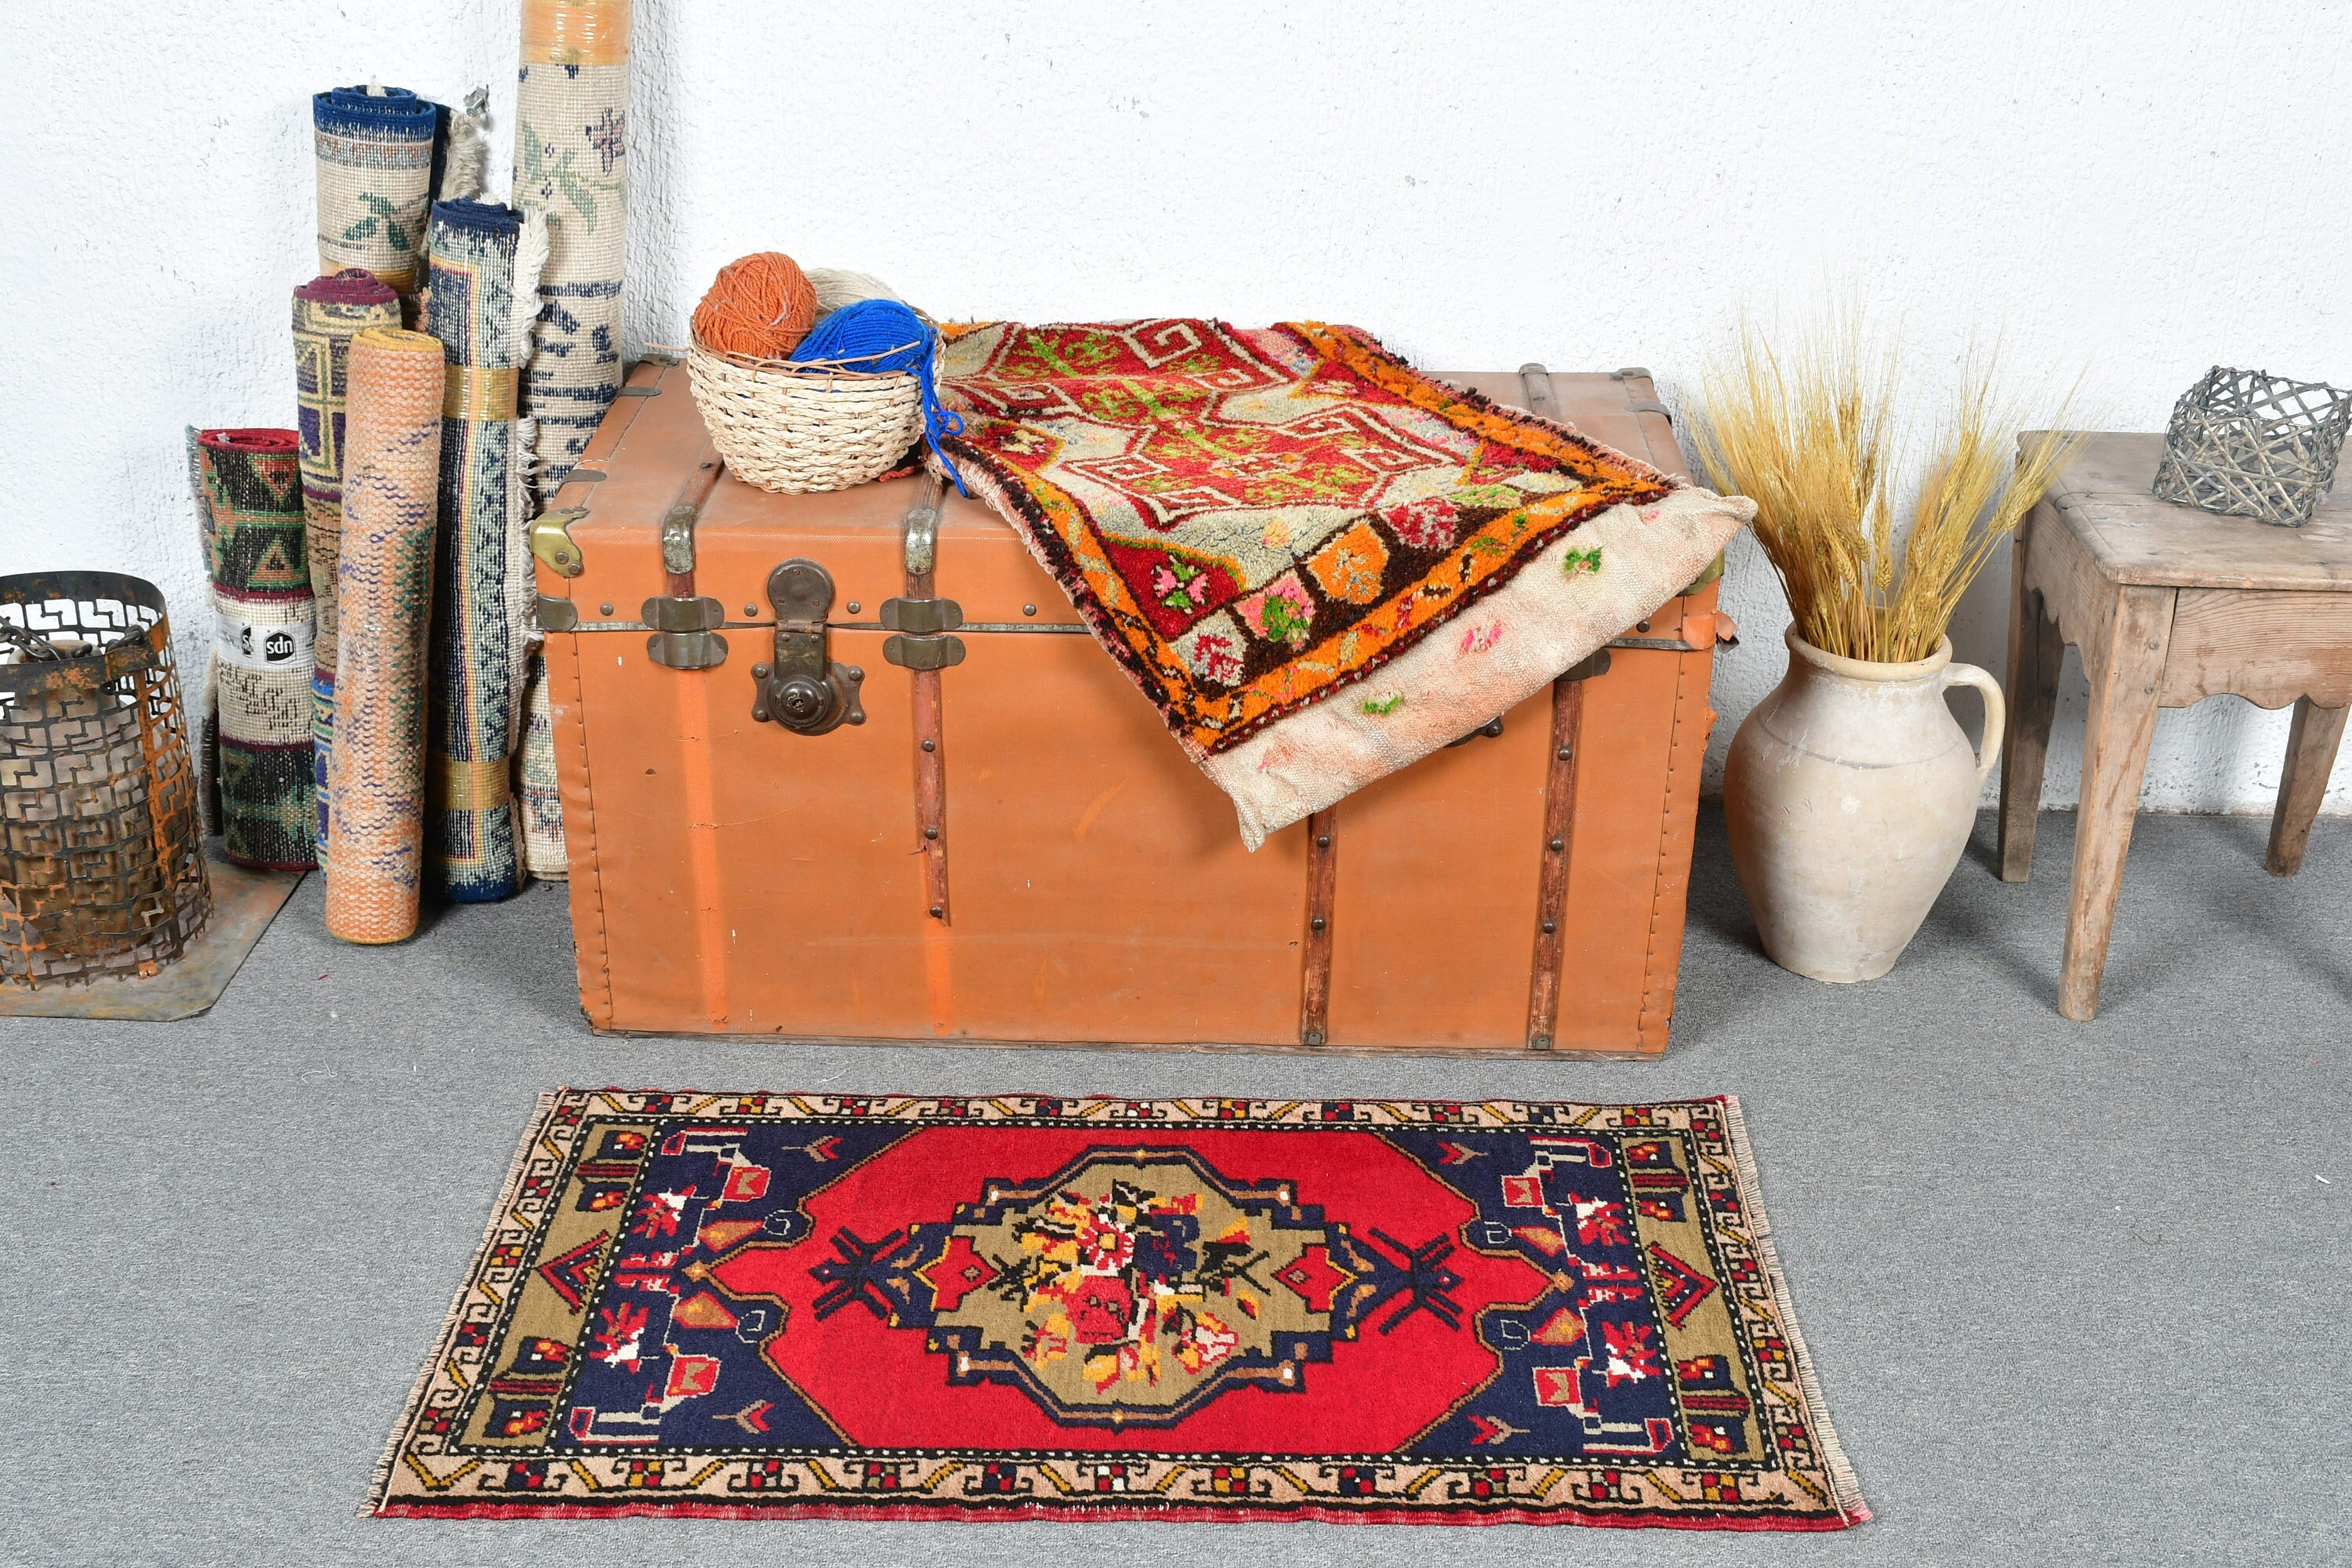 Türk Halıları, Havalı Halı, Çocuk Halıları, Vintage Halı, Kapı Paspası Halıları, Kırmızı 1.8x3.3 ft Küçük Halı, Mutfak Halısı